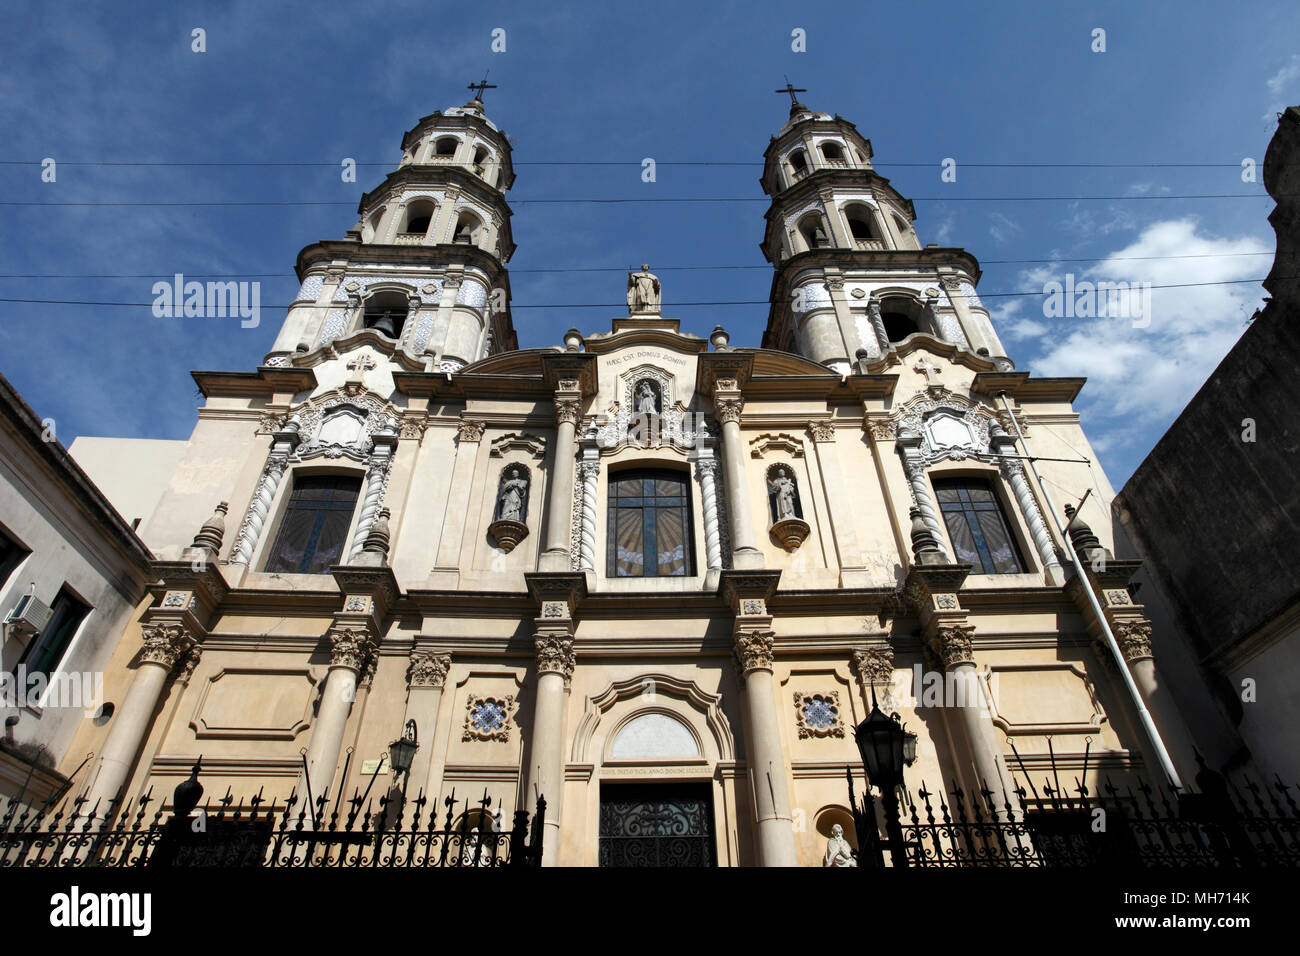 Iglesia de san pedro telmo fotografías e imágenes de alta resolución - Alamy